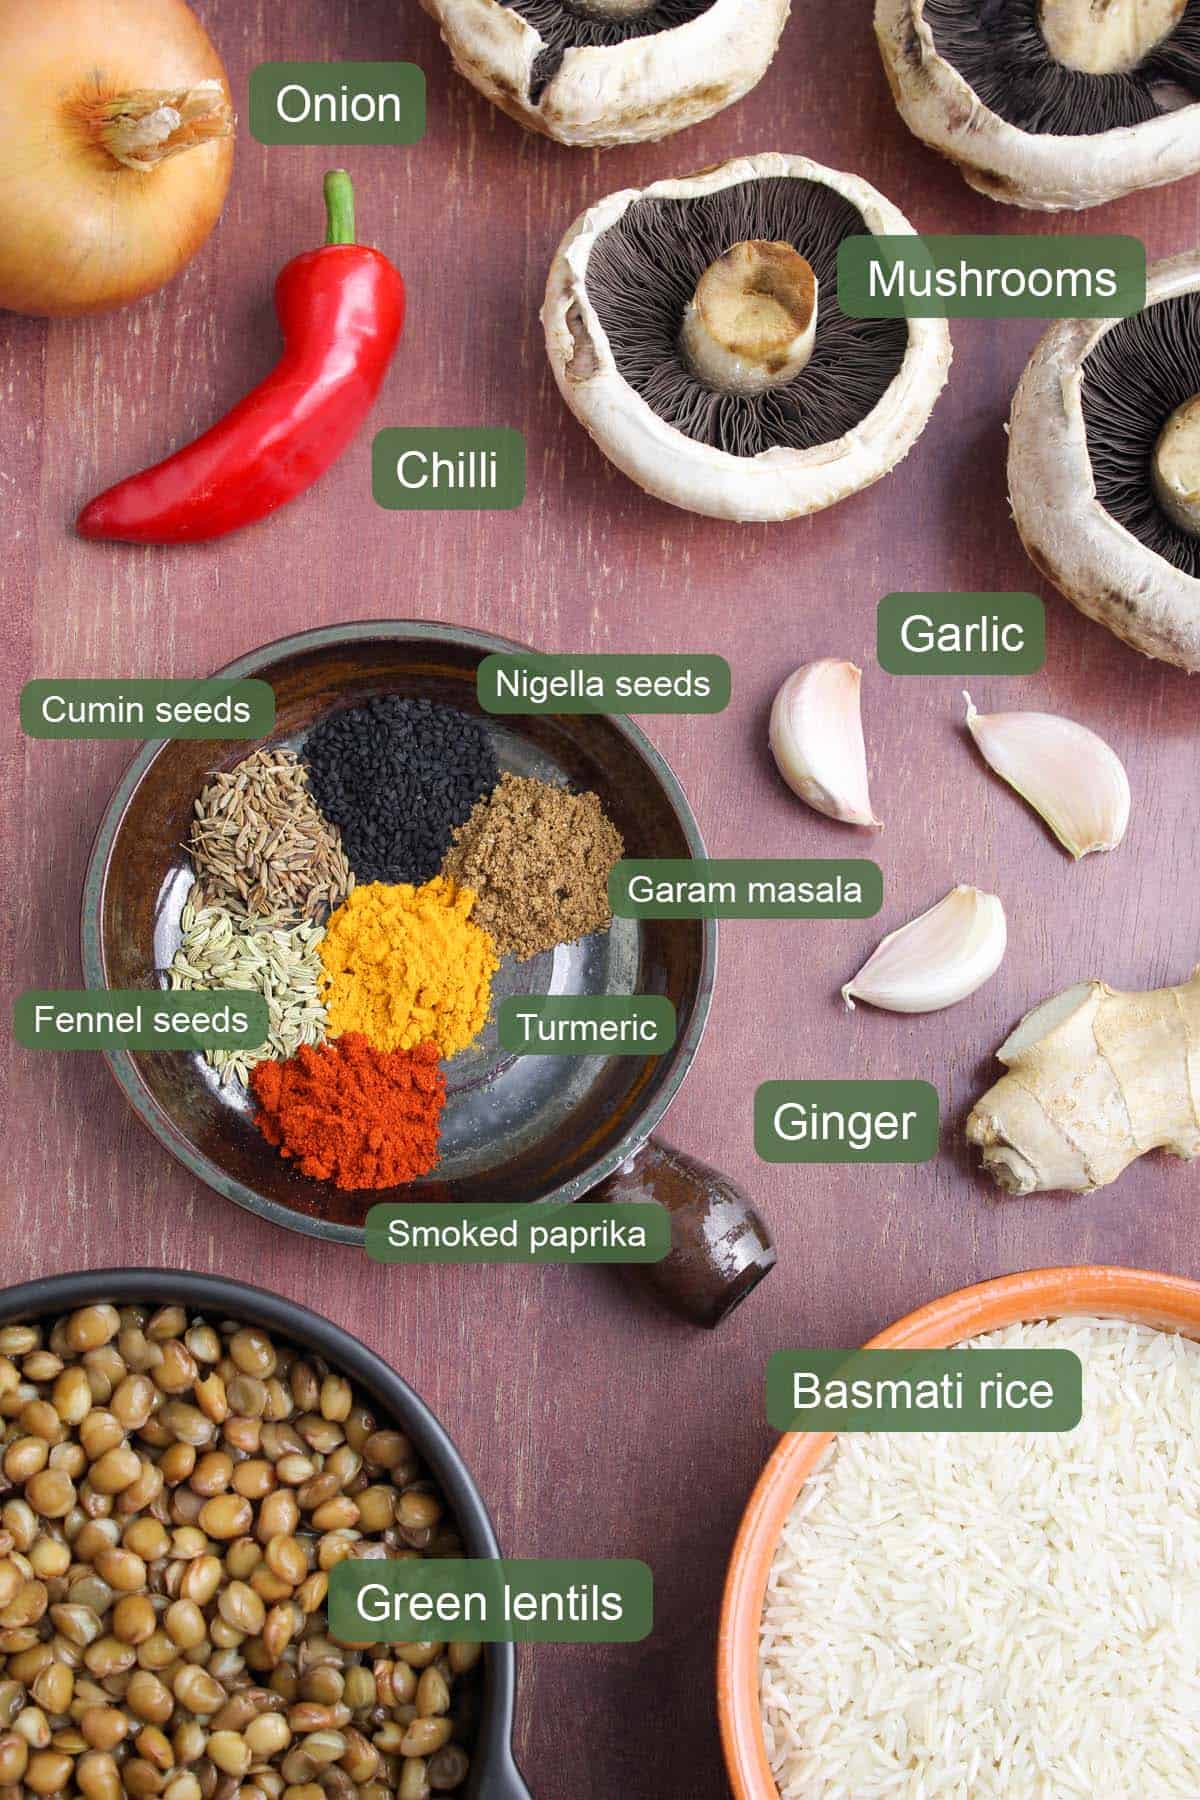 List of Ingredients to Make Mushroom Biryani with Lentils